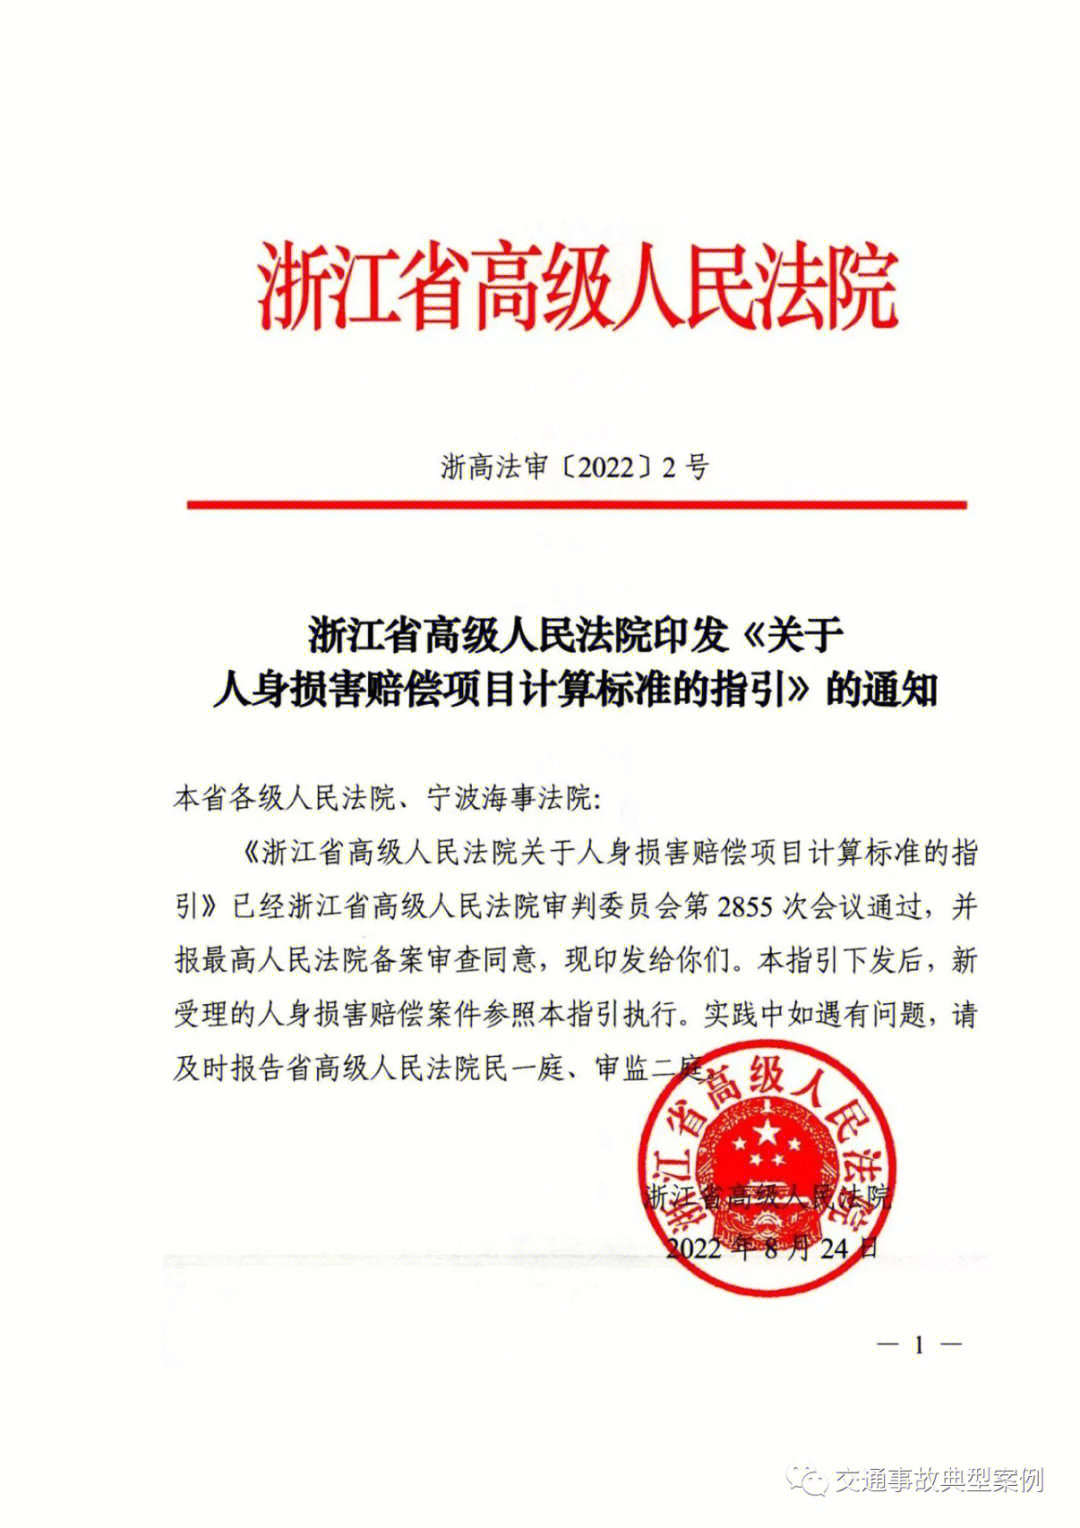 近日,浙江省高级人民法院印发《关于人身损害赔偿项目计算标准的指引